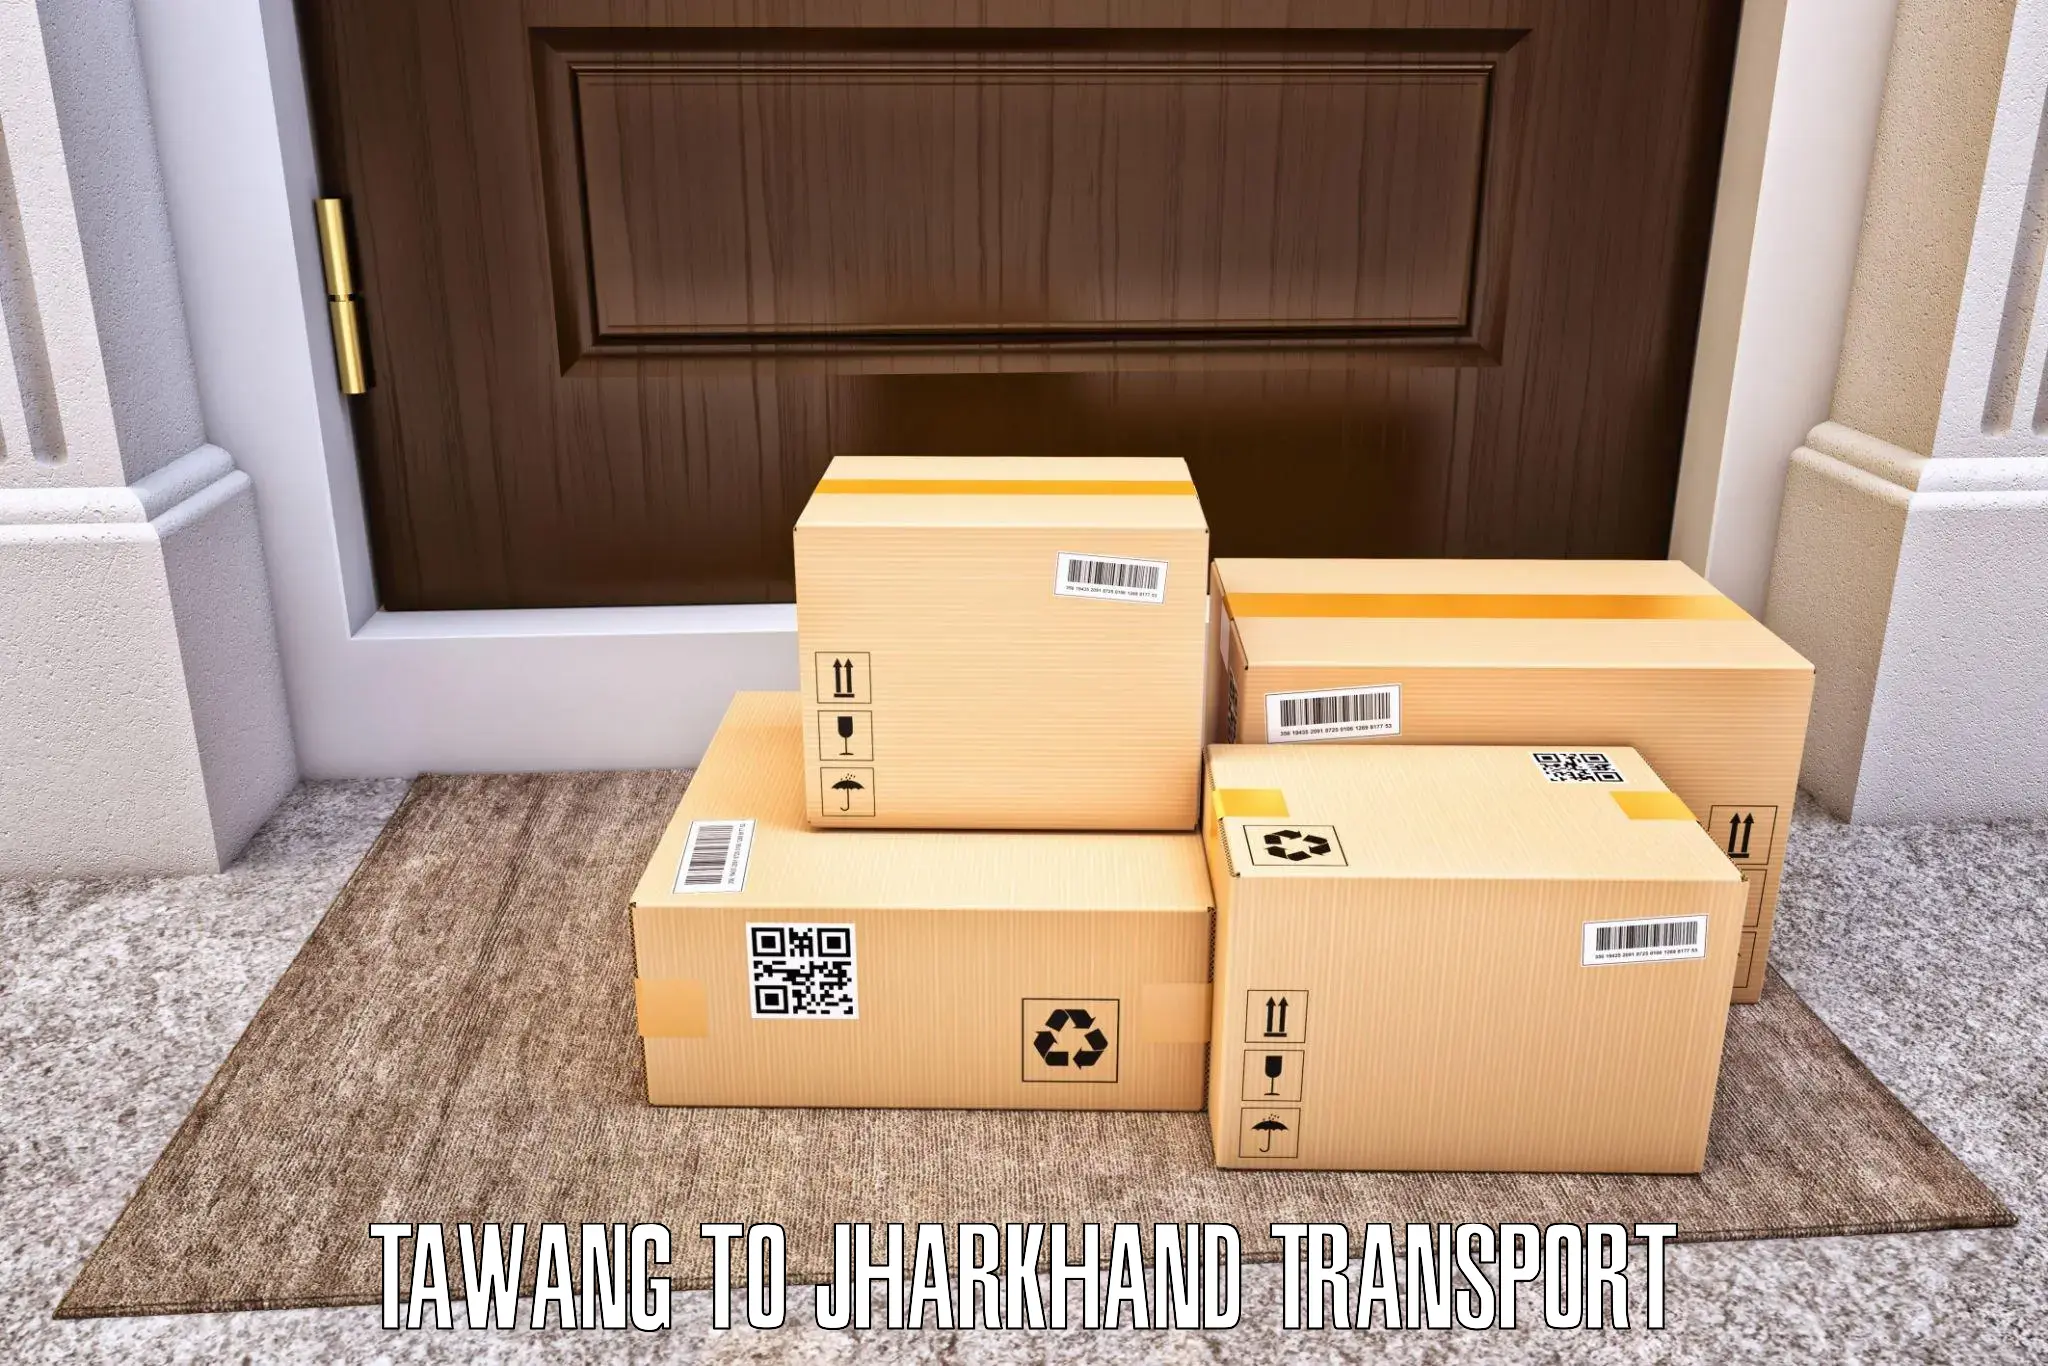 Lorry transport service Tawang to Tandwa